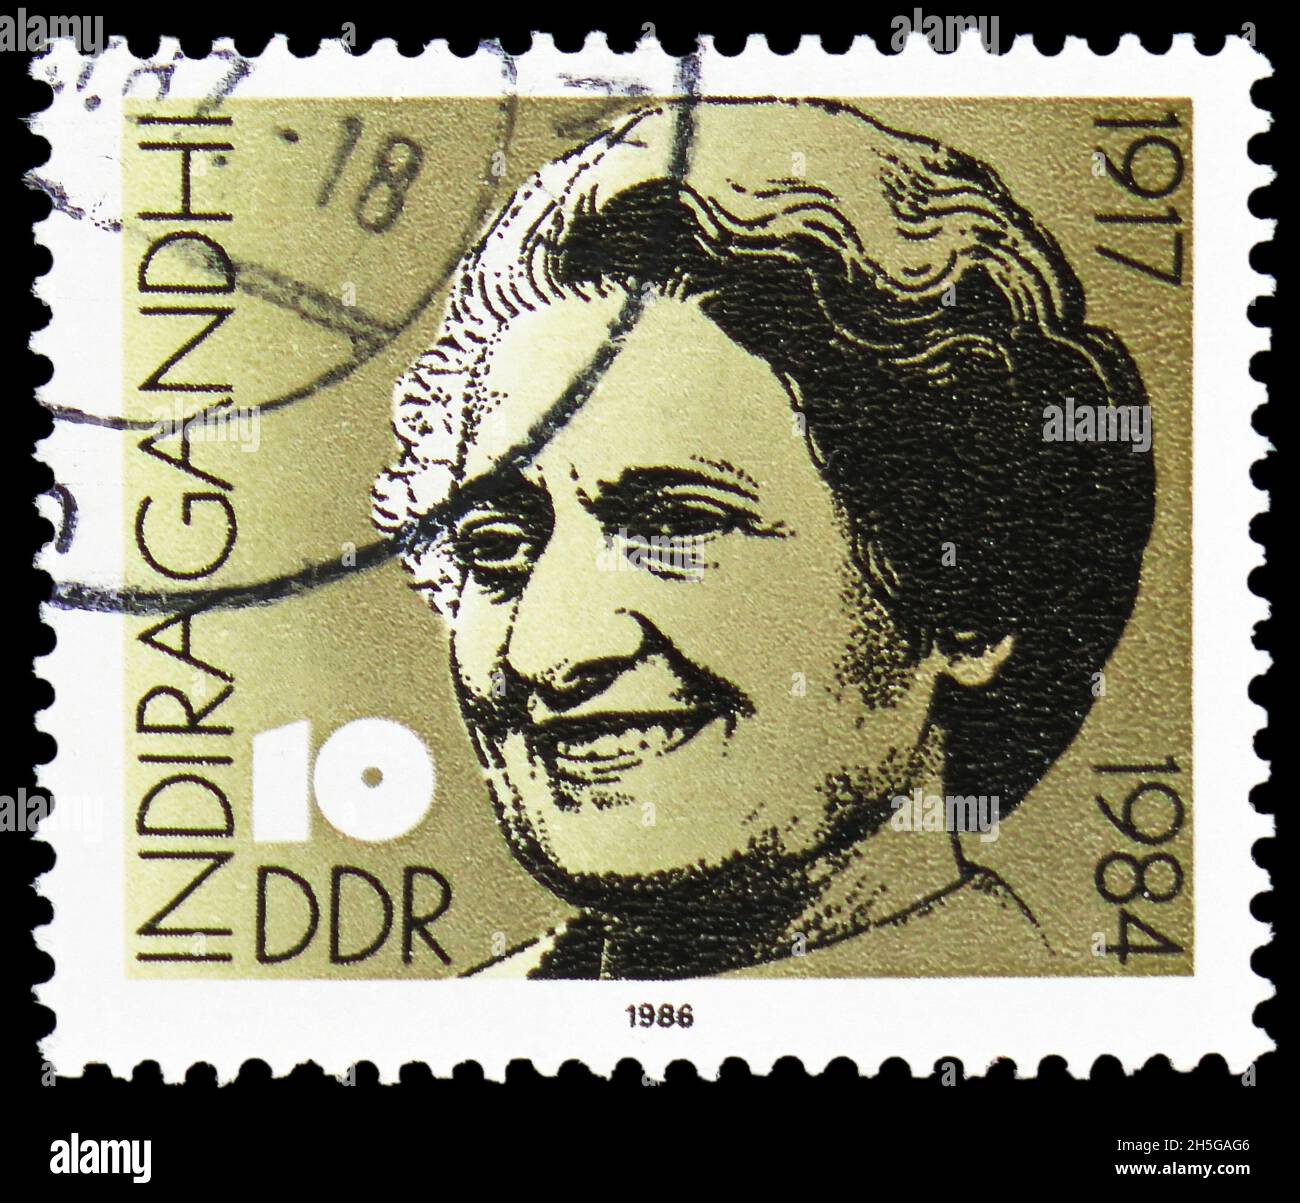 MOSKAU, RUSSLAND - 24. OKTOBER 2021: In Deutschland gedruckte Briefmarke zum 69. Geburtstag von Indira Gandhi (1917-1984), Serie, um 1986 Stockfoto